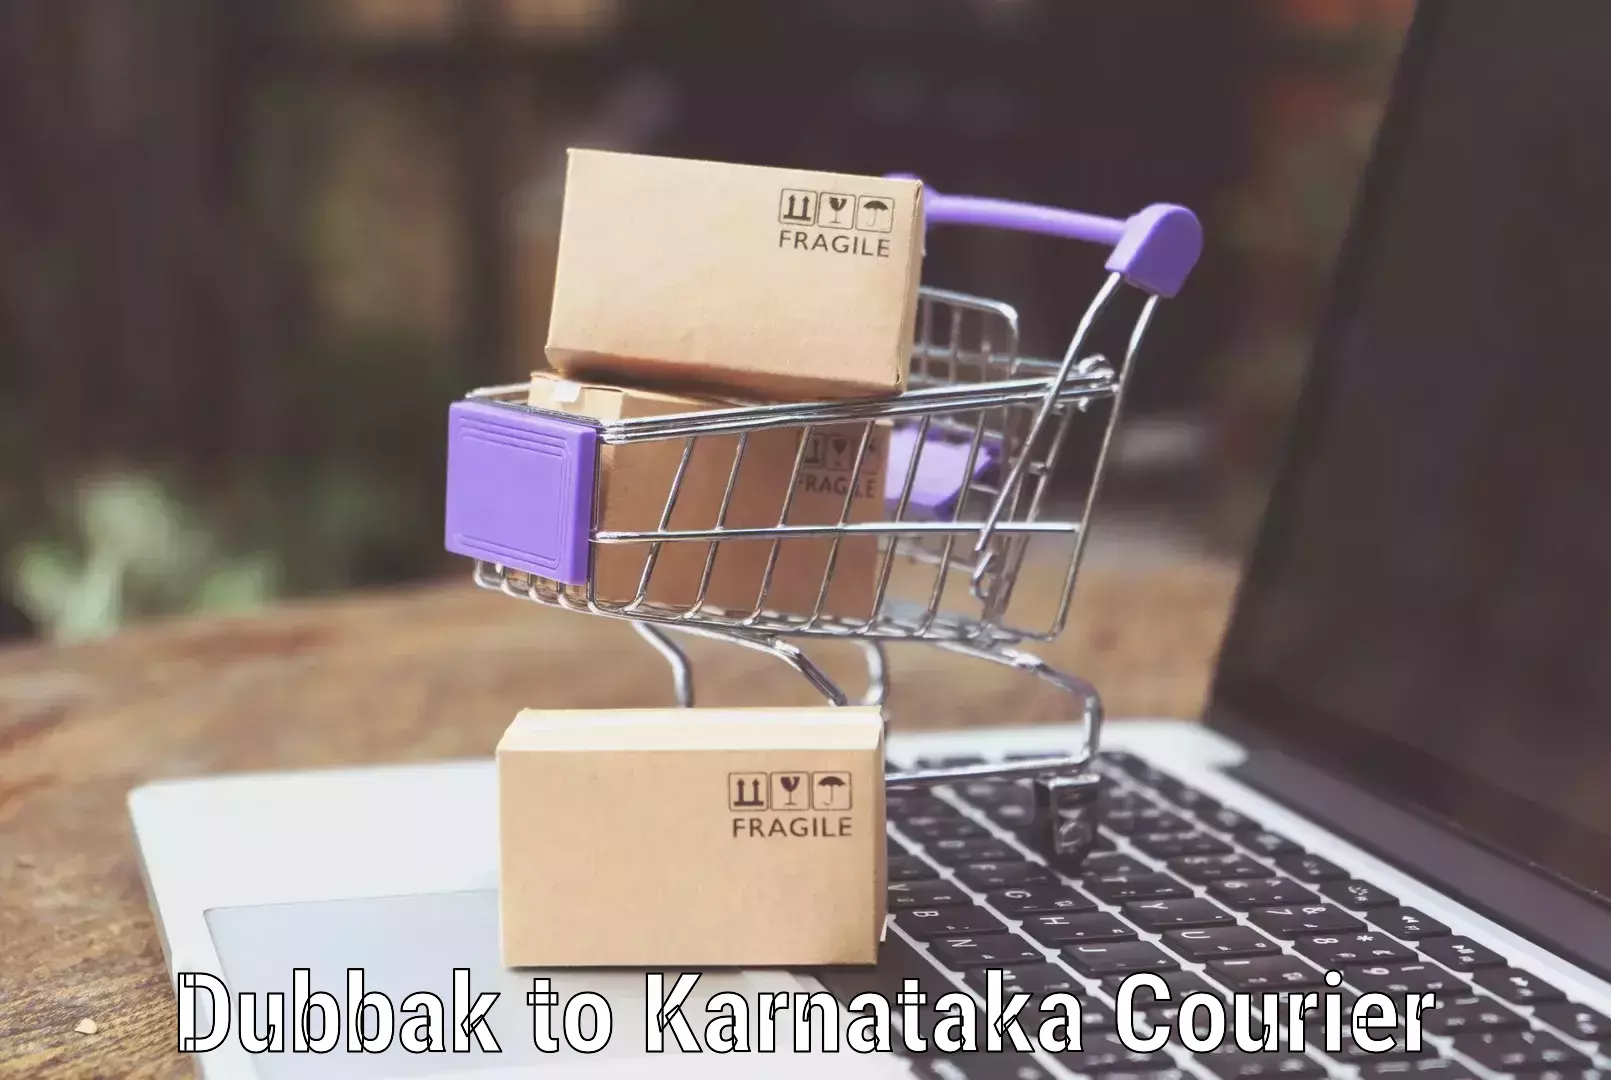 Luggage delivery providers Dubbak to Karnataka